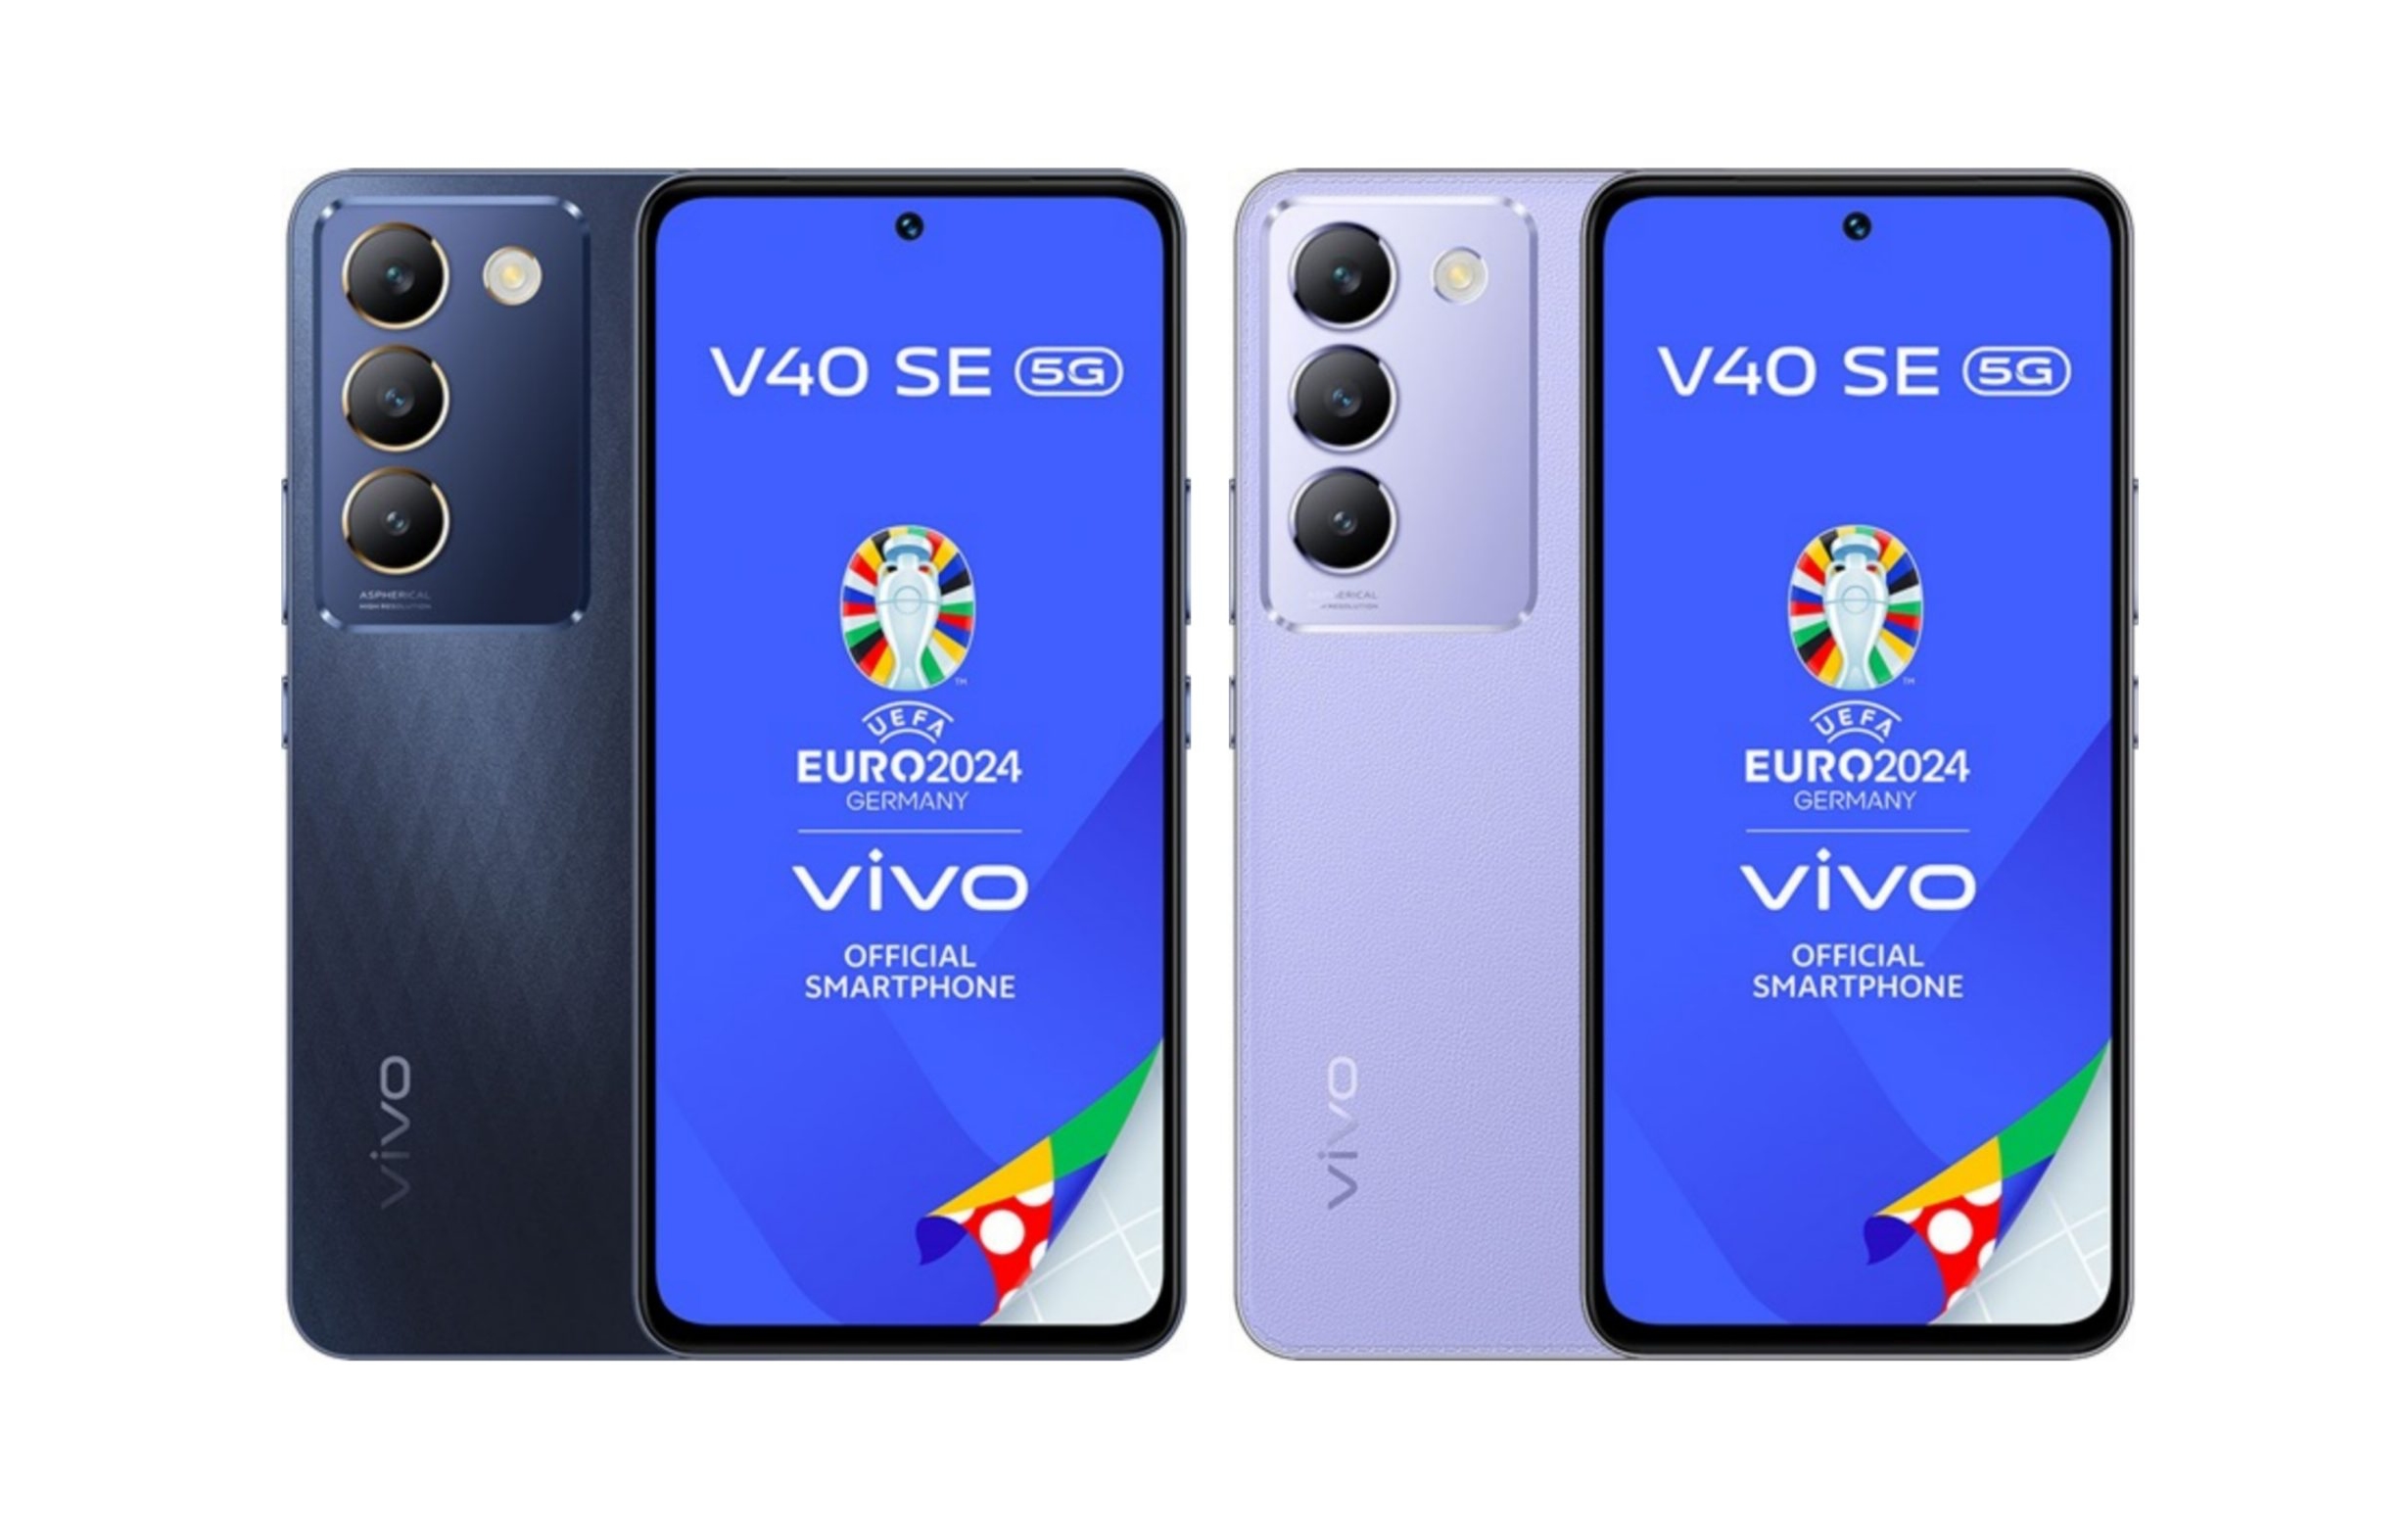 Un insider ha desvelado el aspecto, las especificaciones y el precio europeo del smartphone vivo V40 SE